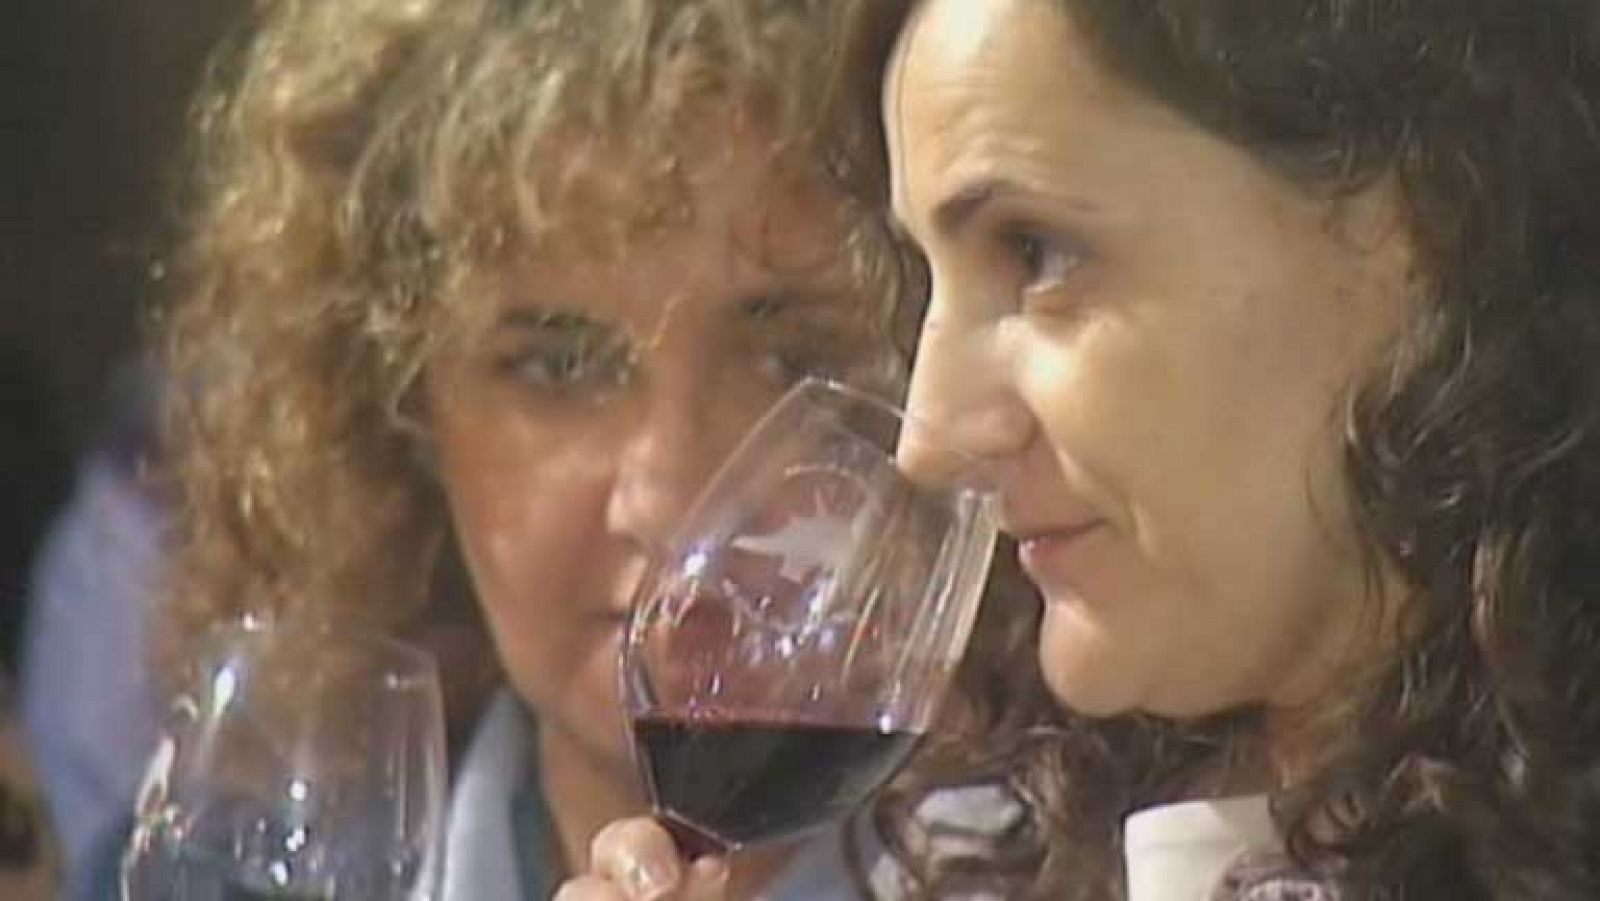 Telediario 1: "La Noche del Vino" en Toledo | RTVE Play